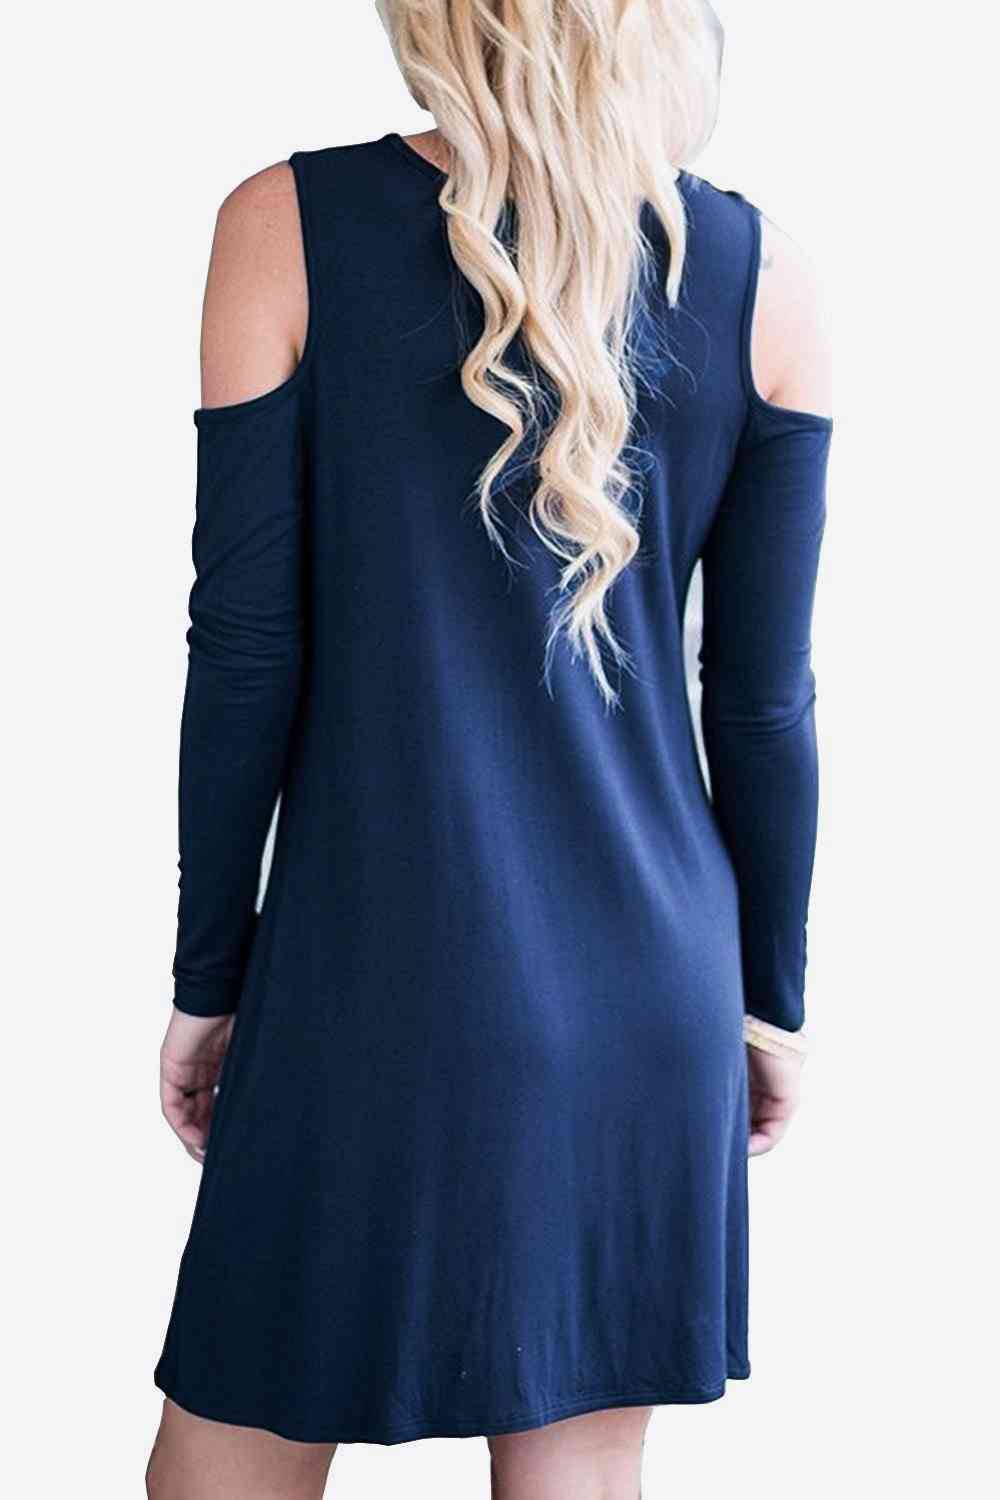 Cold-Shoulder Long Sleeve Round Neck Dress - Rose Gold Co. Shop